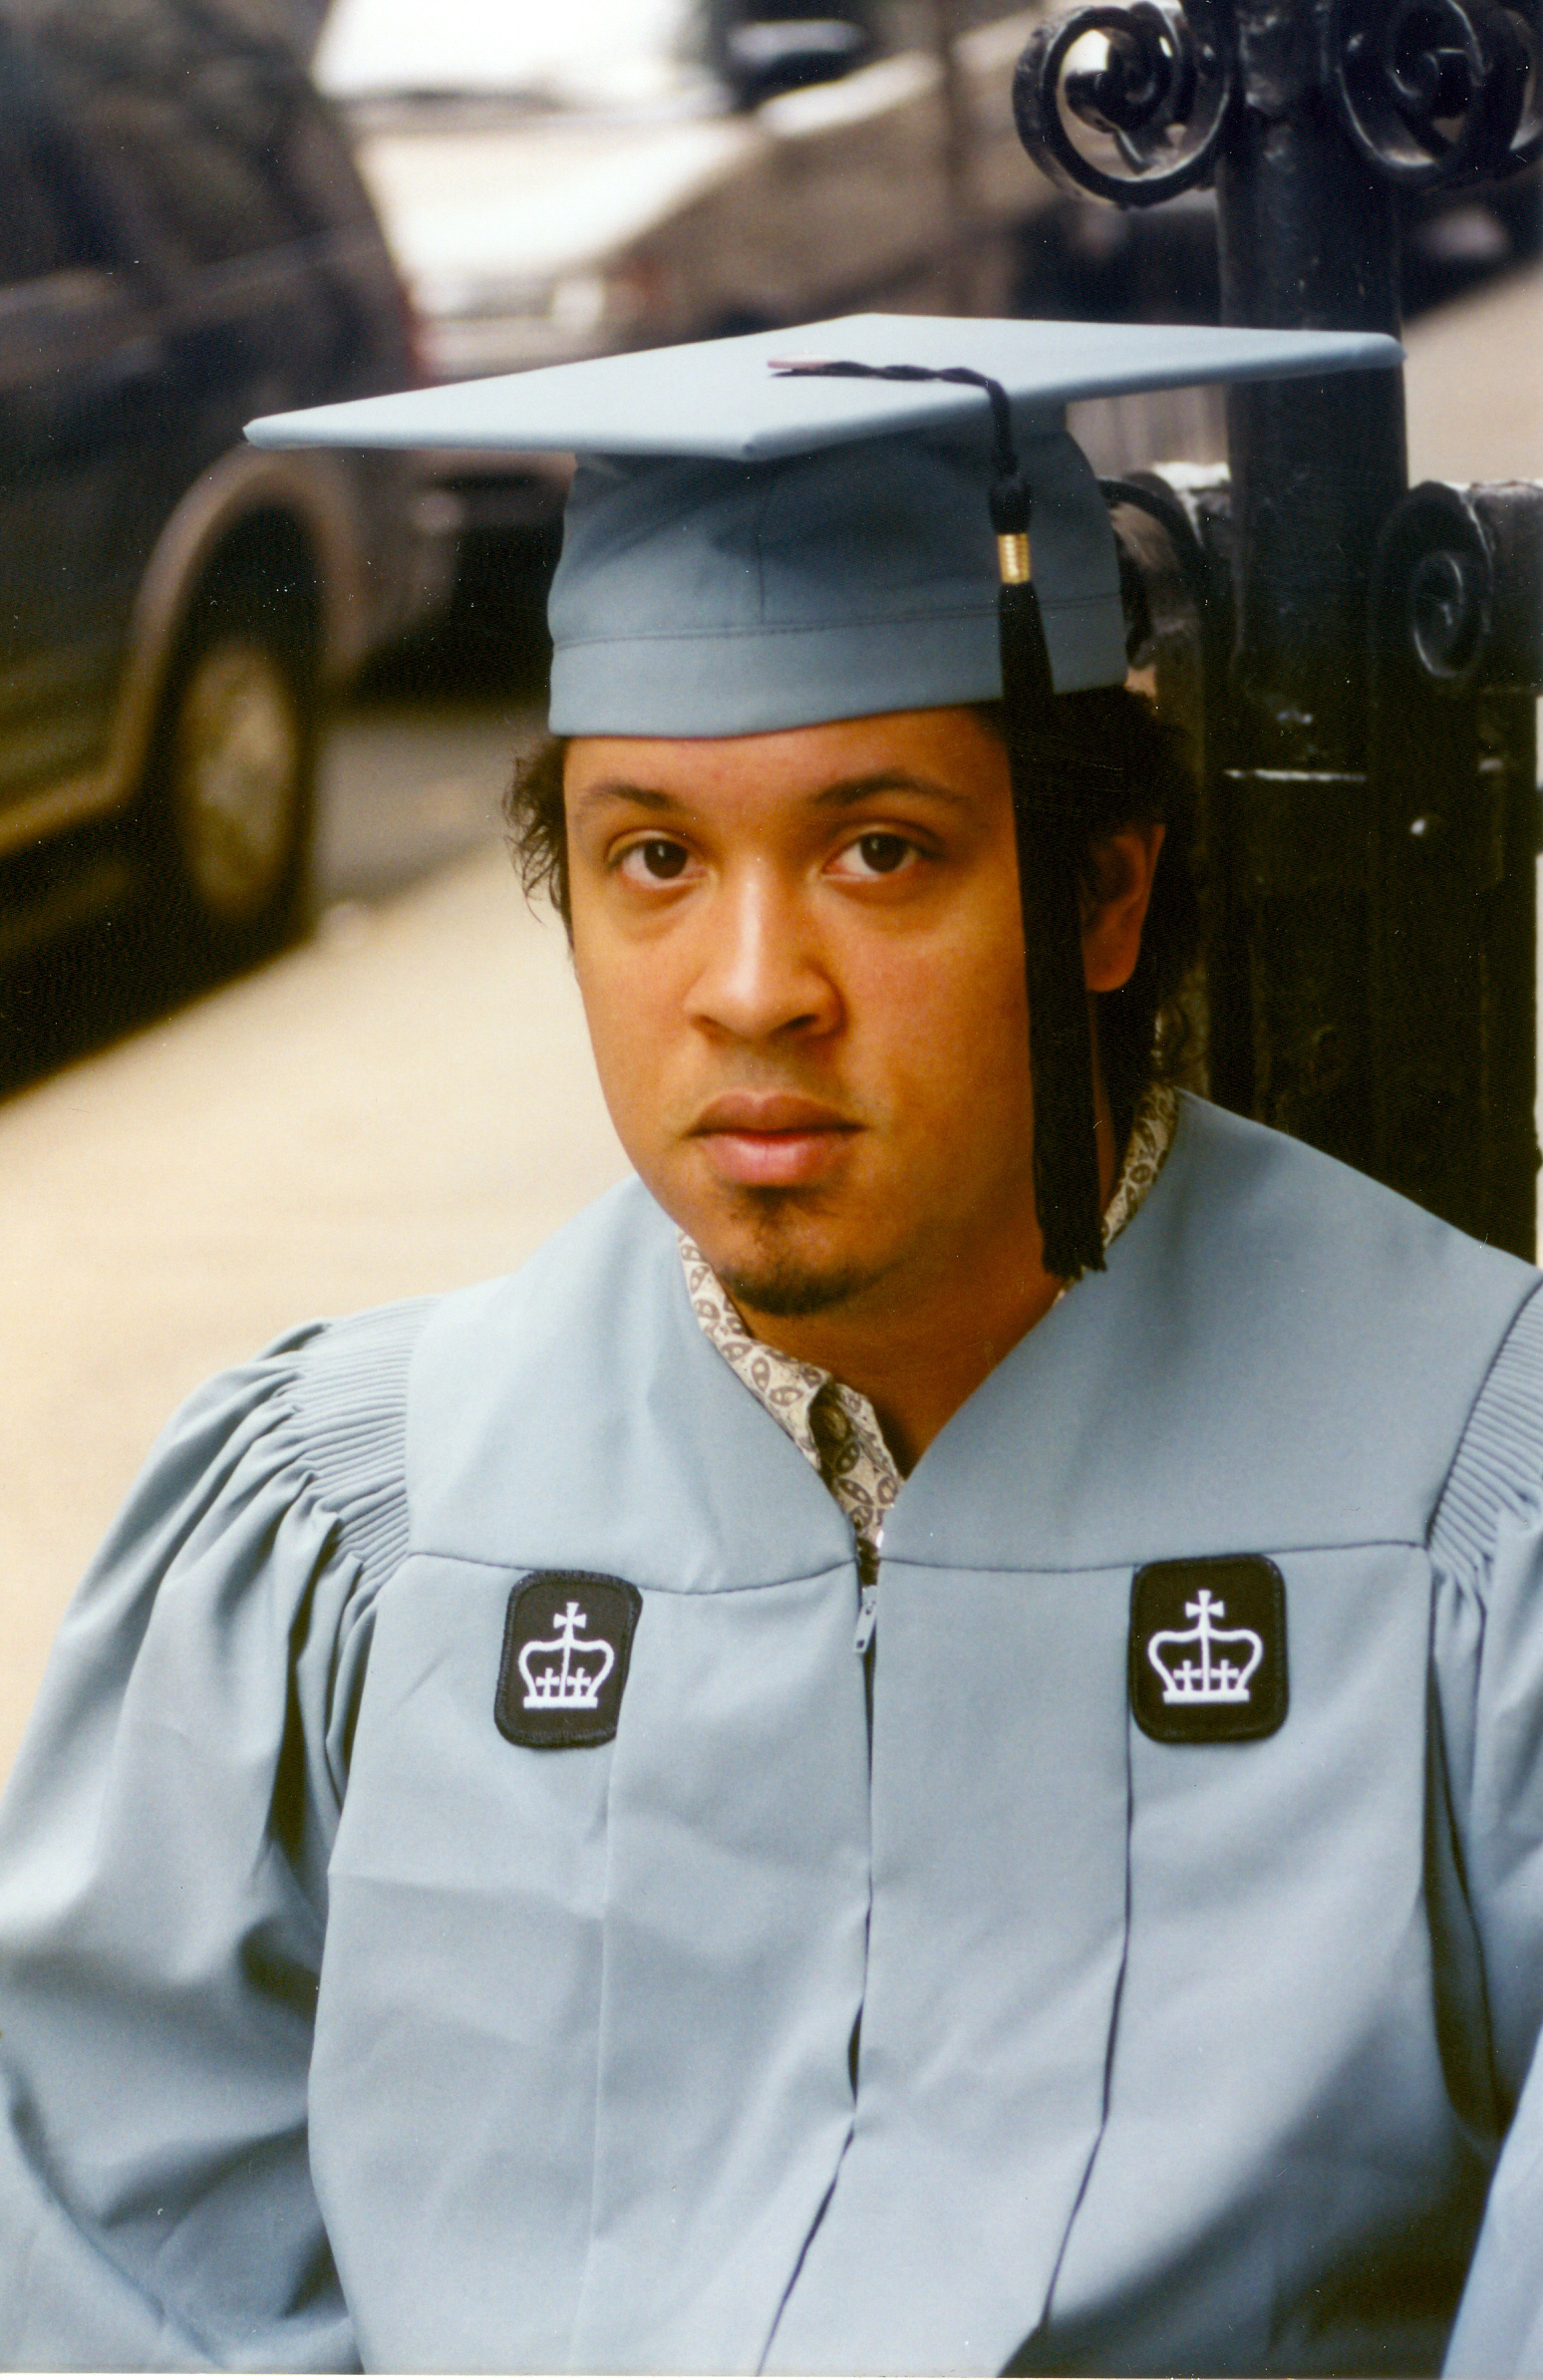 Peter CU graduation 2000